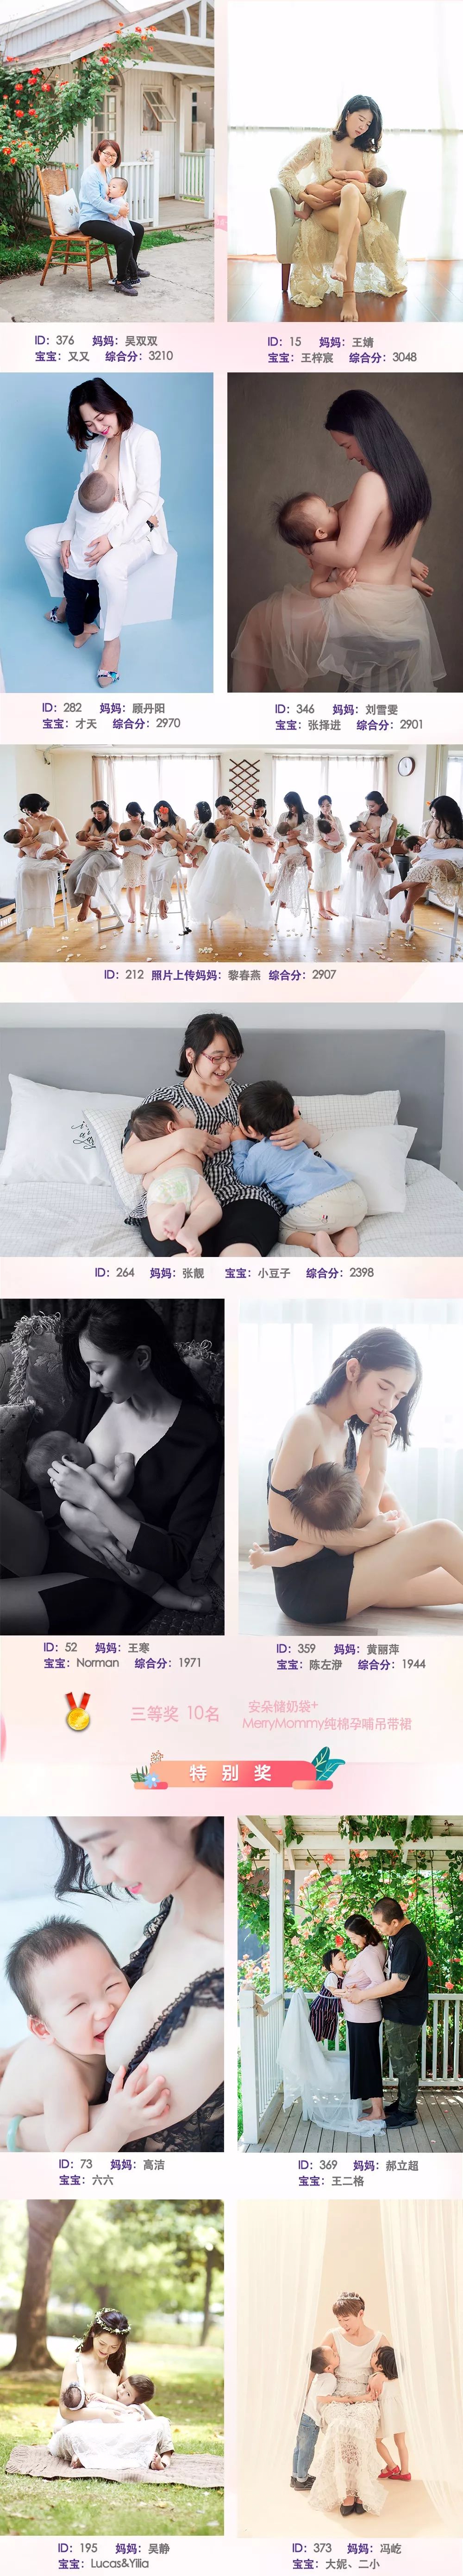 2018年国际母乳会中国520我爱你母乳艺术照获奖结果公布